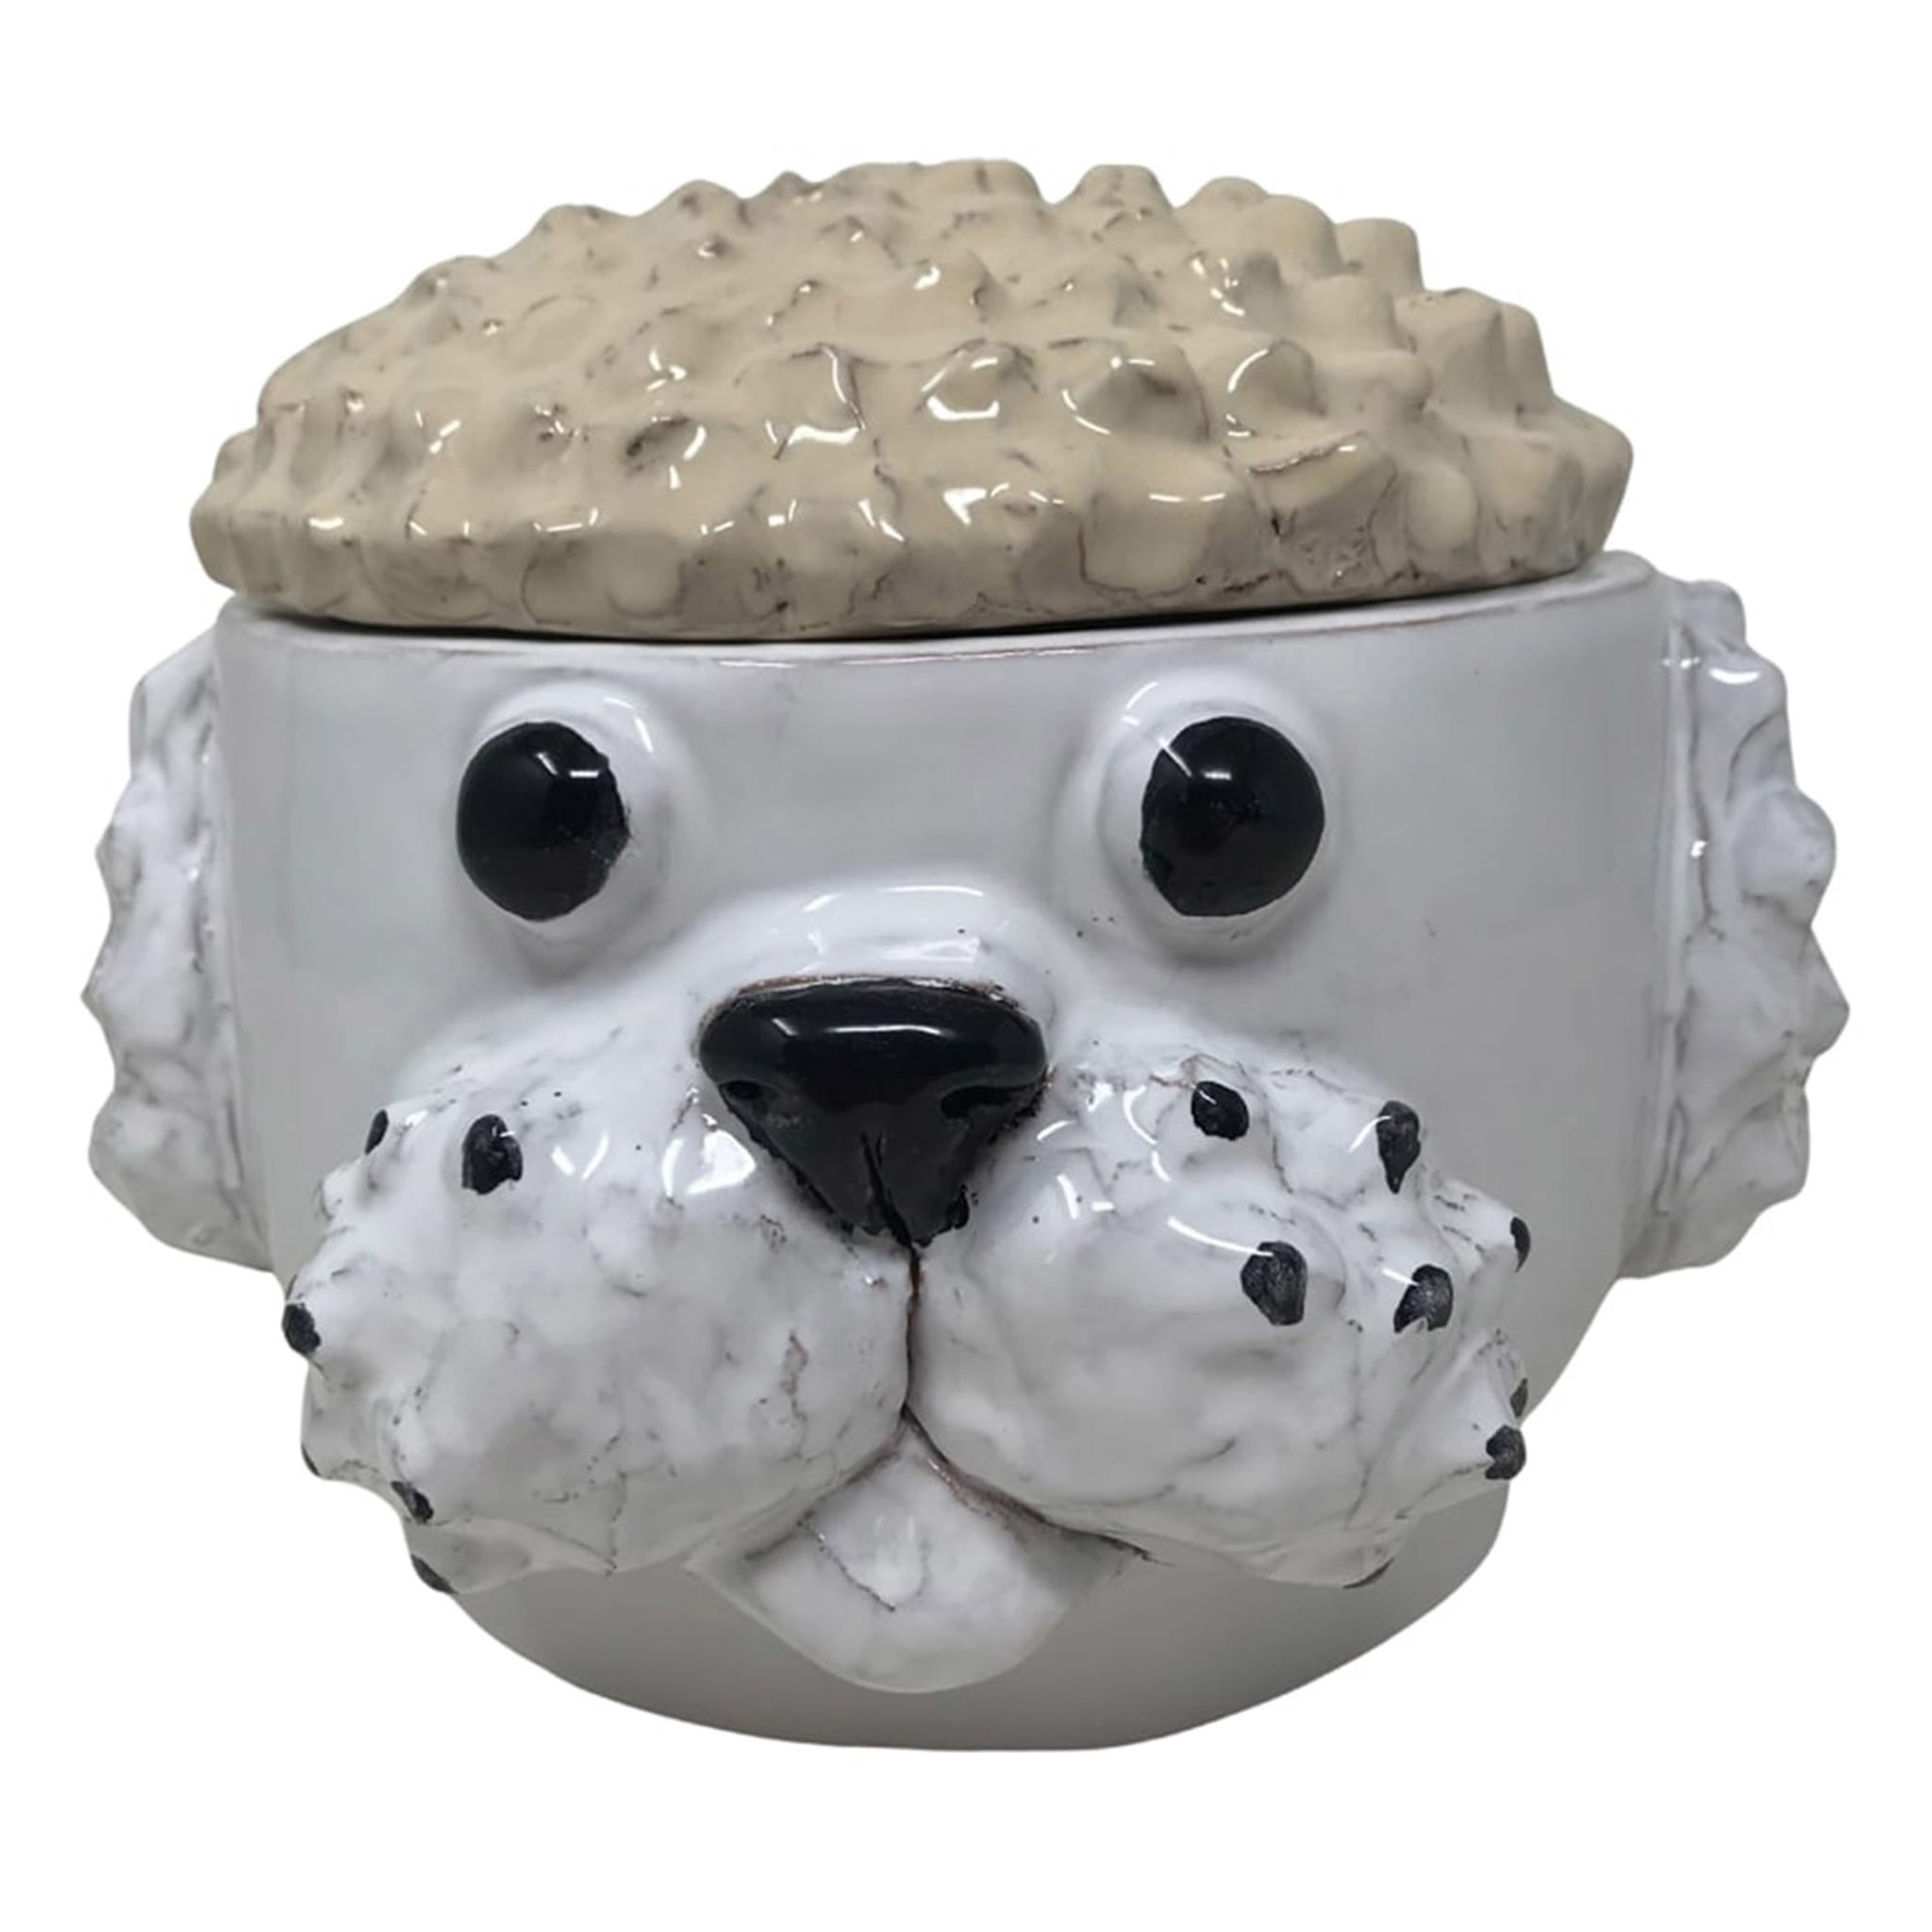 Petite boîte à chien crème et blanche avec couvercle - Vue principale